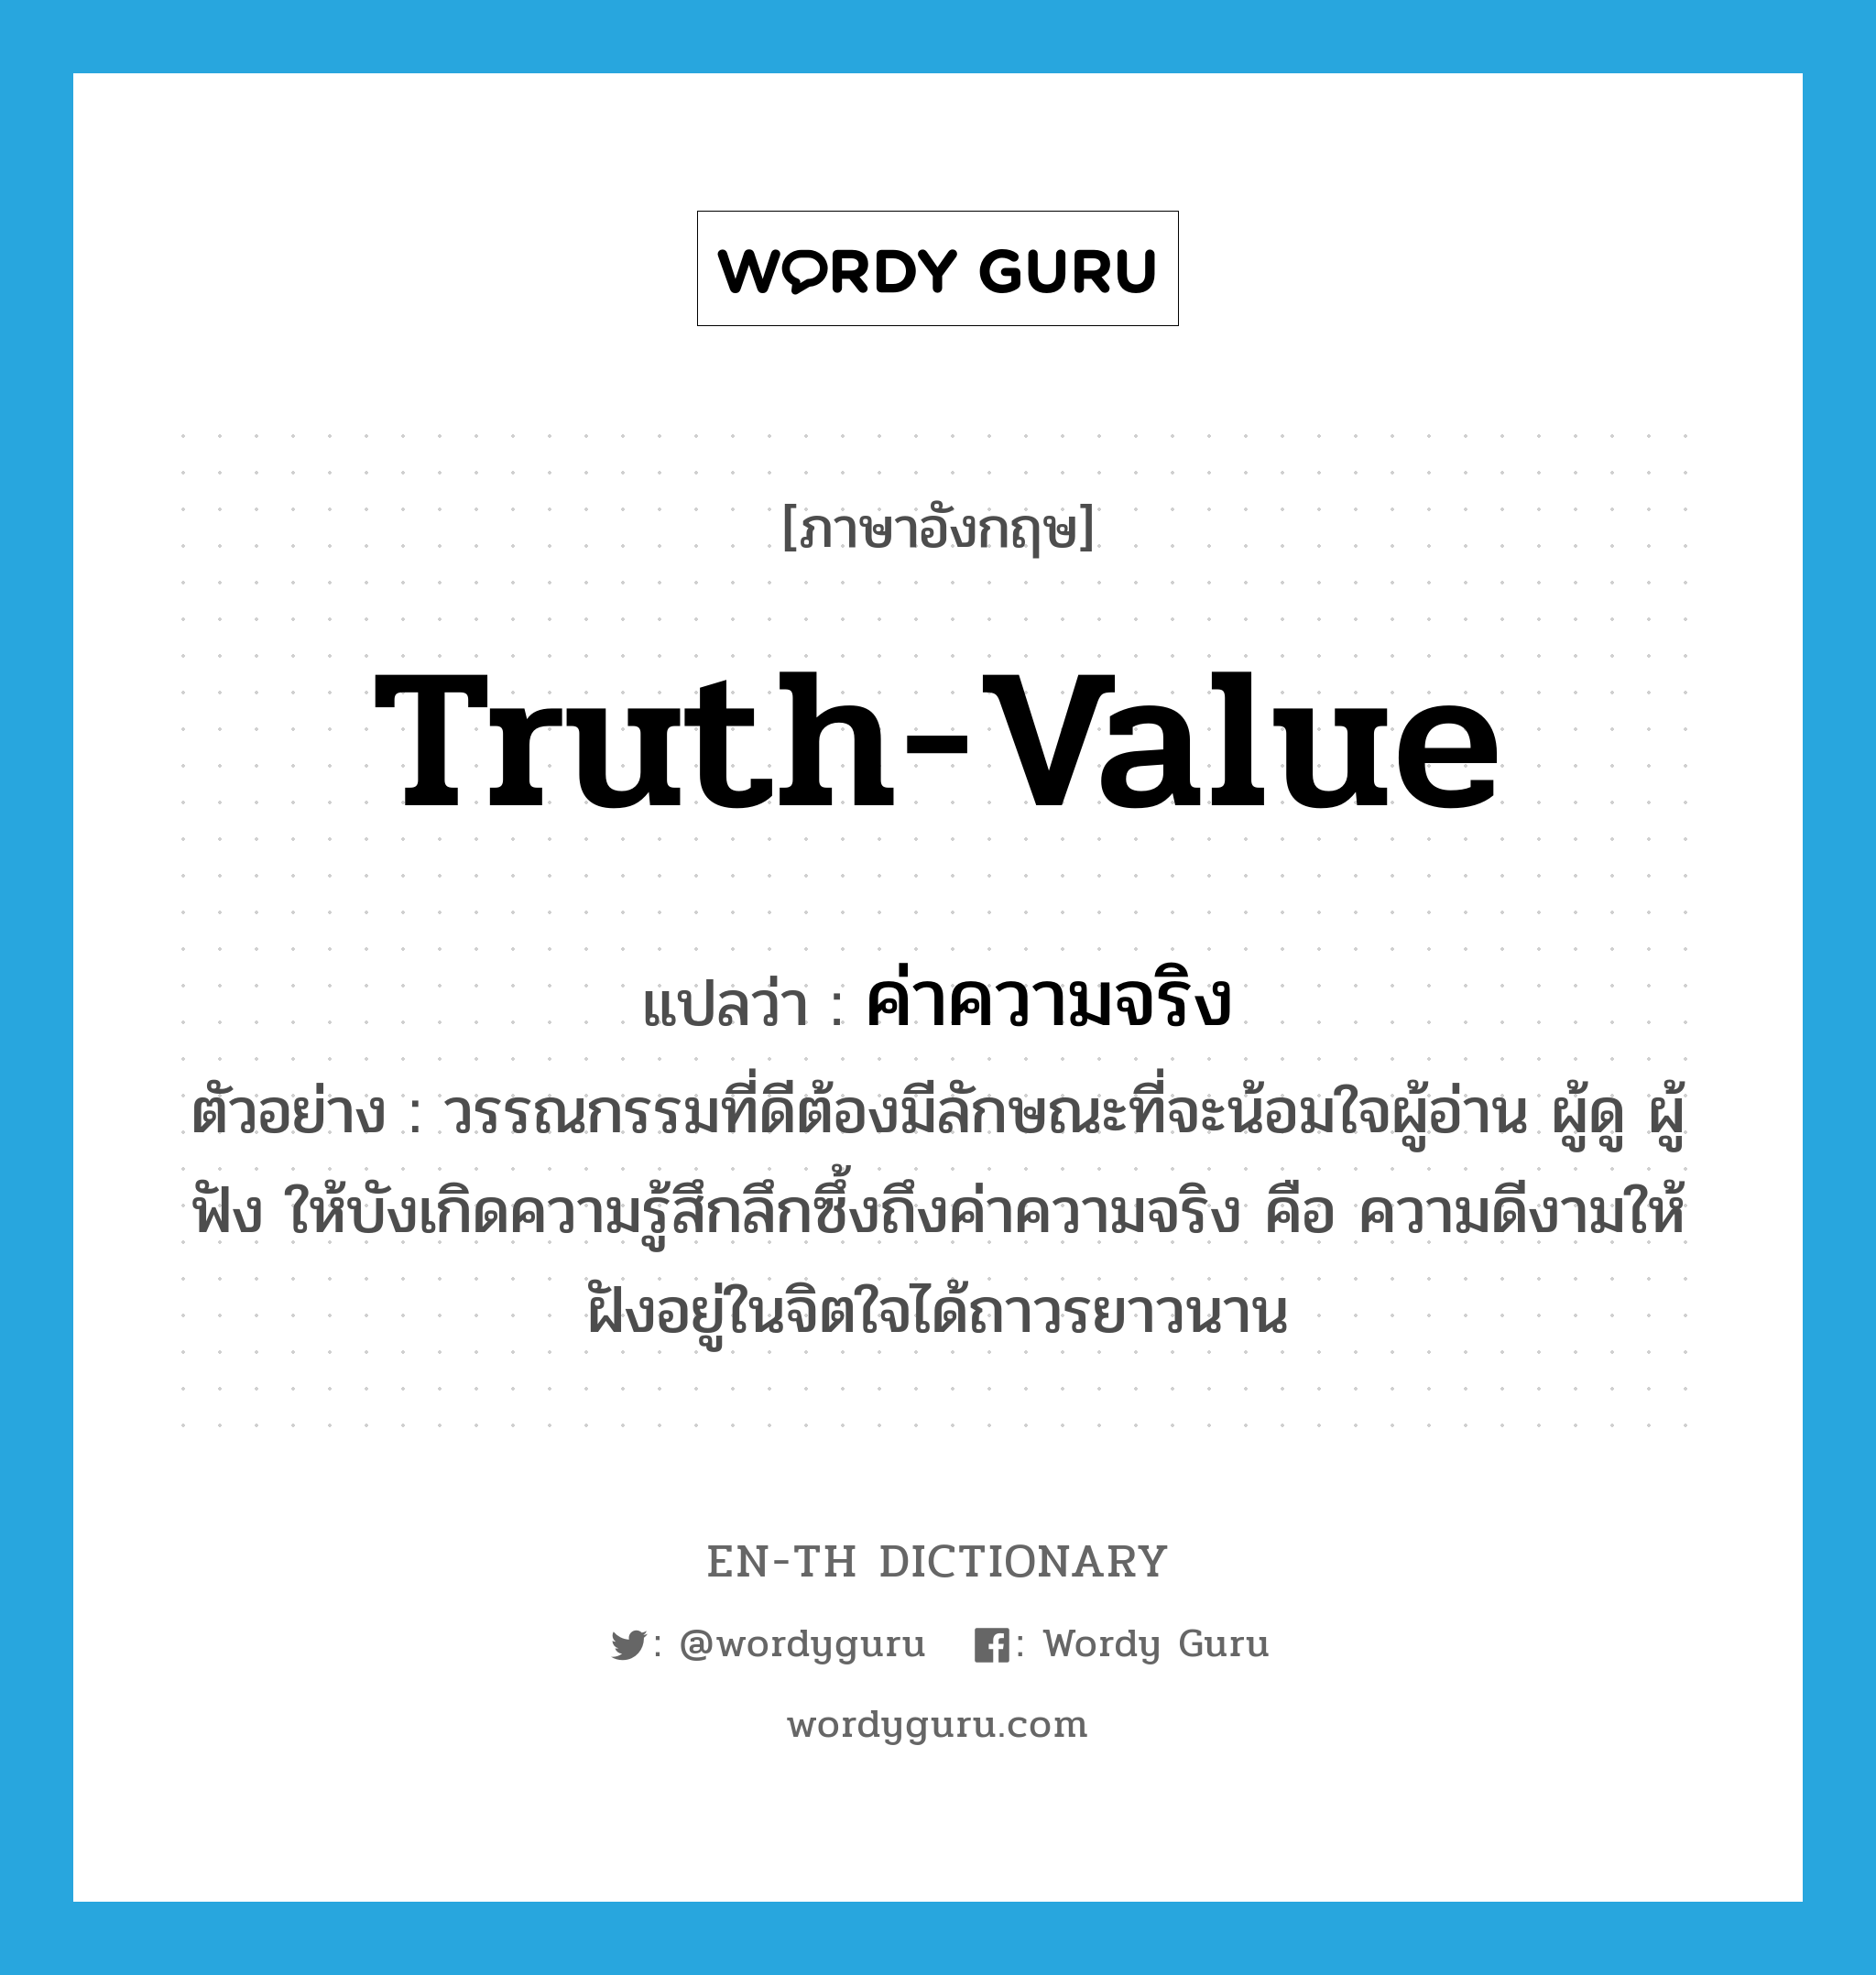 truth-value แปลว่า?, คำศัพท์ภาษาอังกฤษ truth-value แปลว่า ค่าความจริง ประเภท N ตัวอย่าง วรรณกรรมที่ดีต้องมีลักษณะที่จะน้อมใจผู้อ่าน ผู้ดู ผู้ฟัง ให้บังเกิดความรู้สึกลึกซึ้งถึงค่าความจริง คือ ความดีงามให้ฝังอยู่ในจิตใจได้ถาวรยาวนาน หมวด N